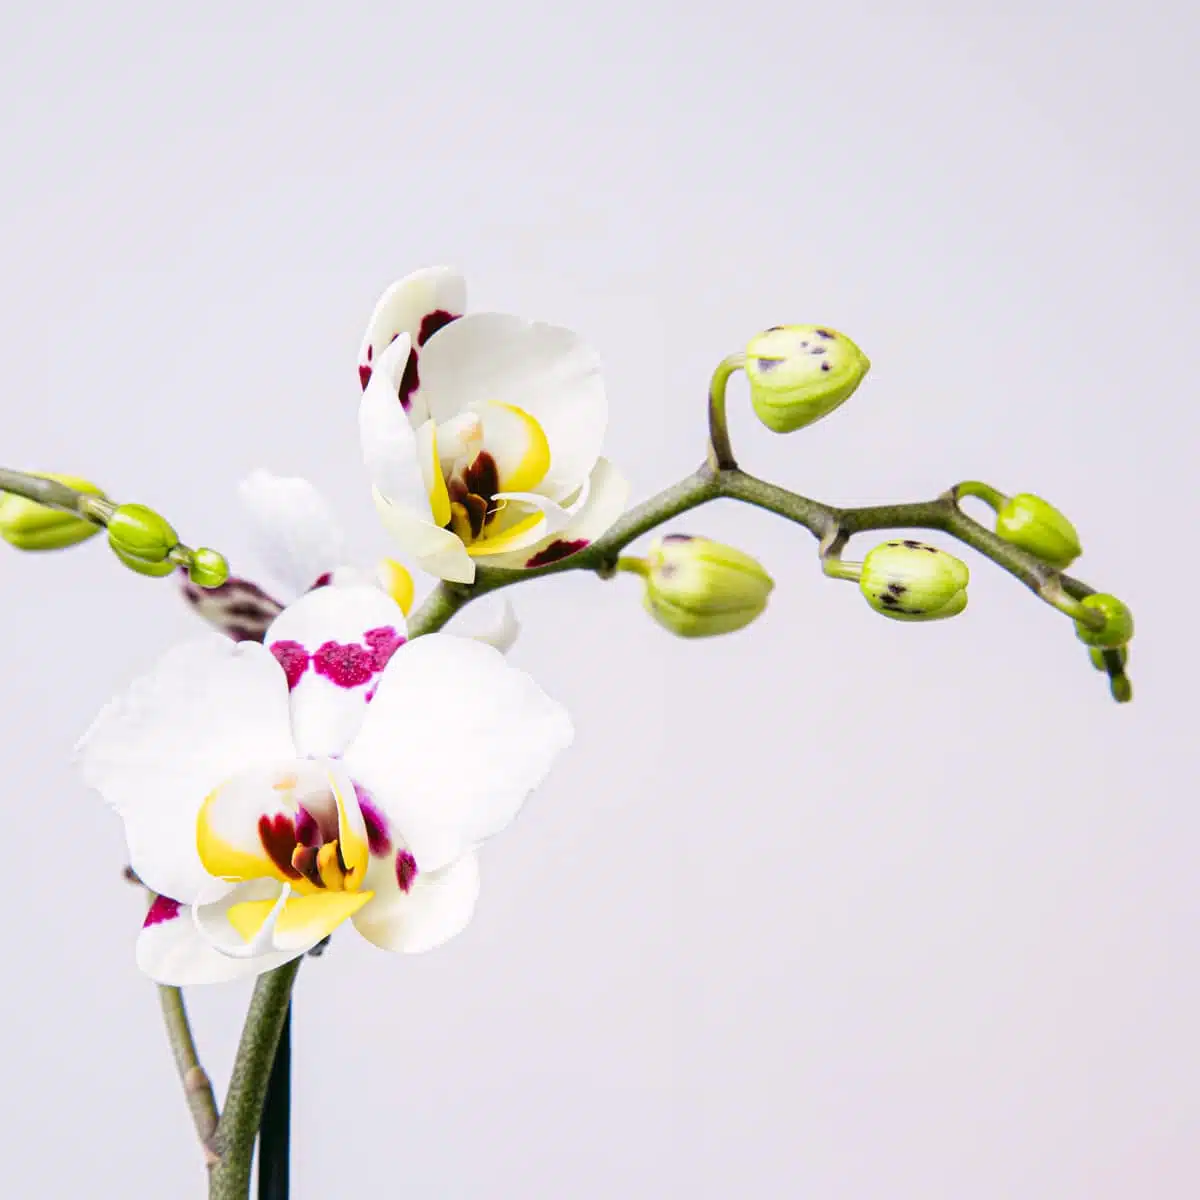 Dettaglio del fiore di orchidea bianca